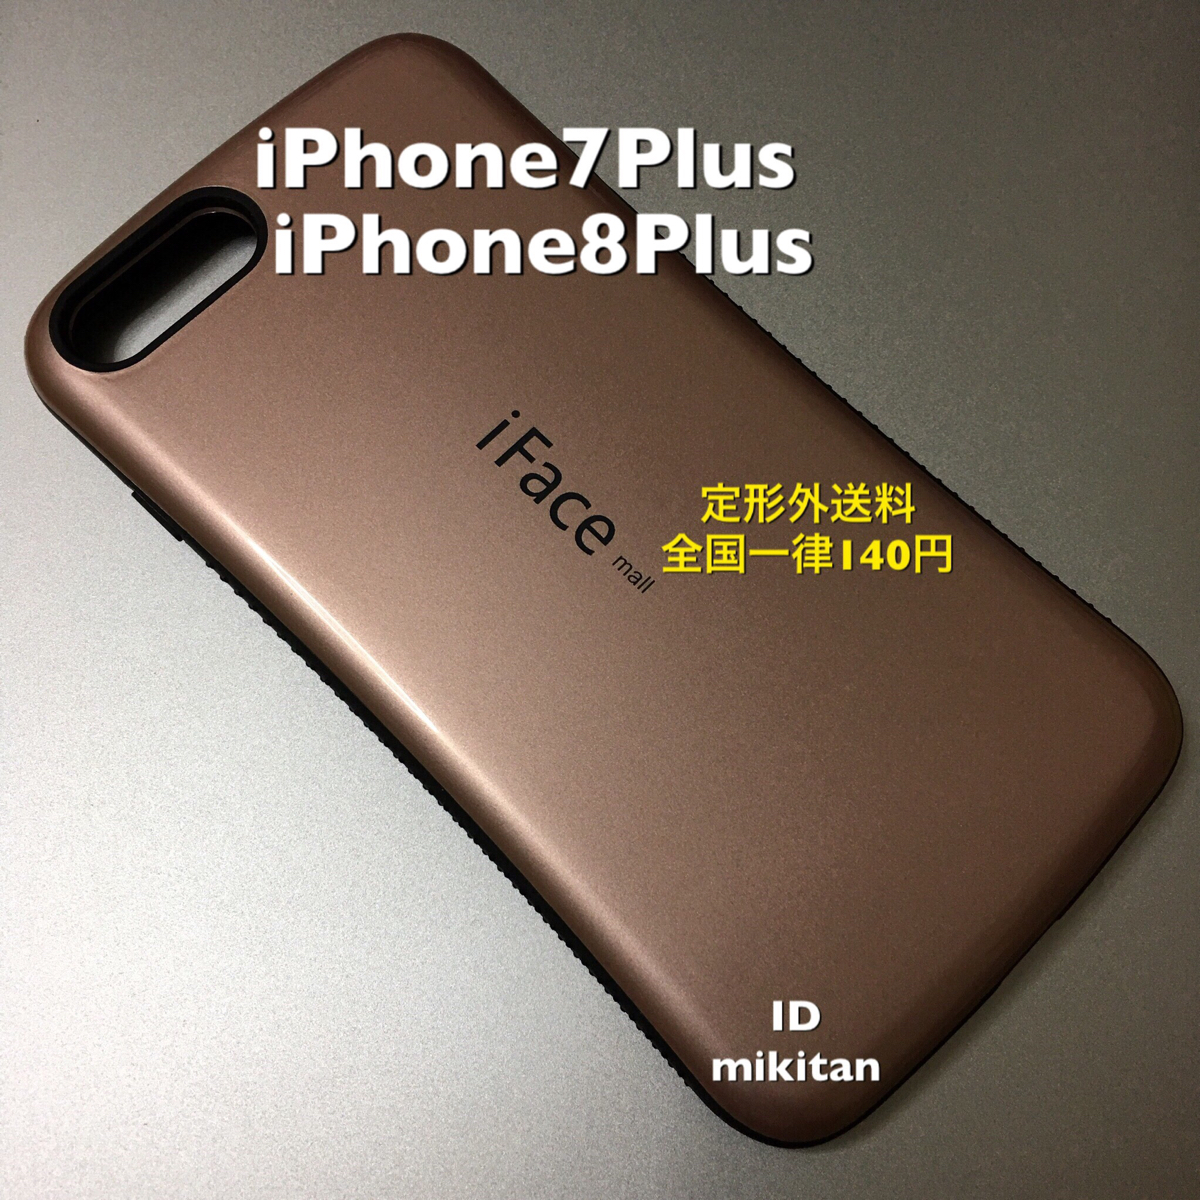 iPhone 7Plus iPhone 8Plus 対応 新品 iFace アイフェイス 携帯 スマホ ケース カバー ローズゴールド_画像1